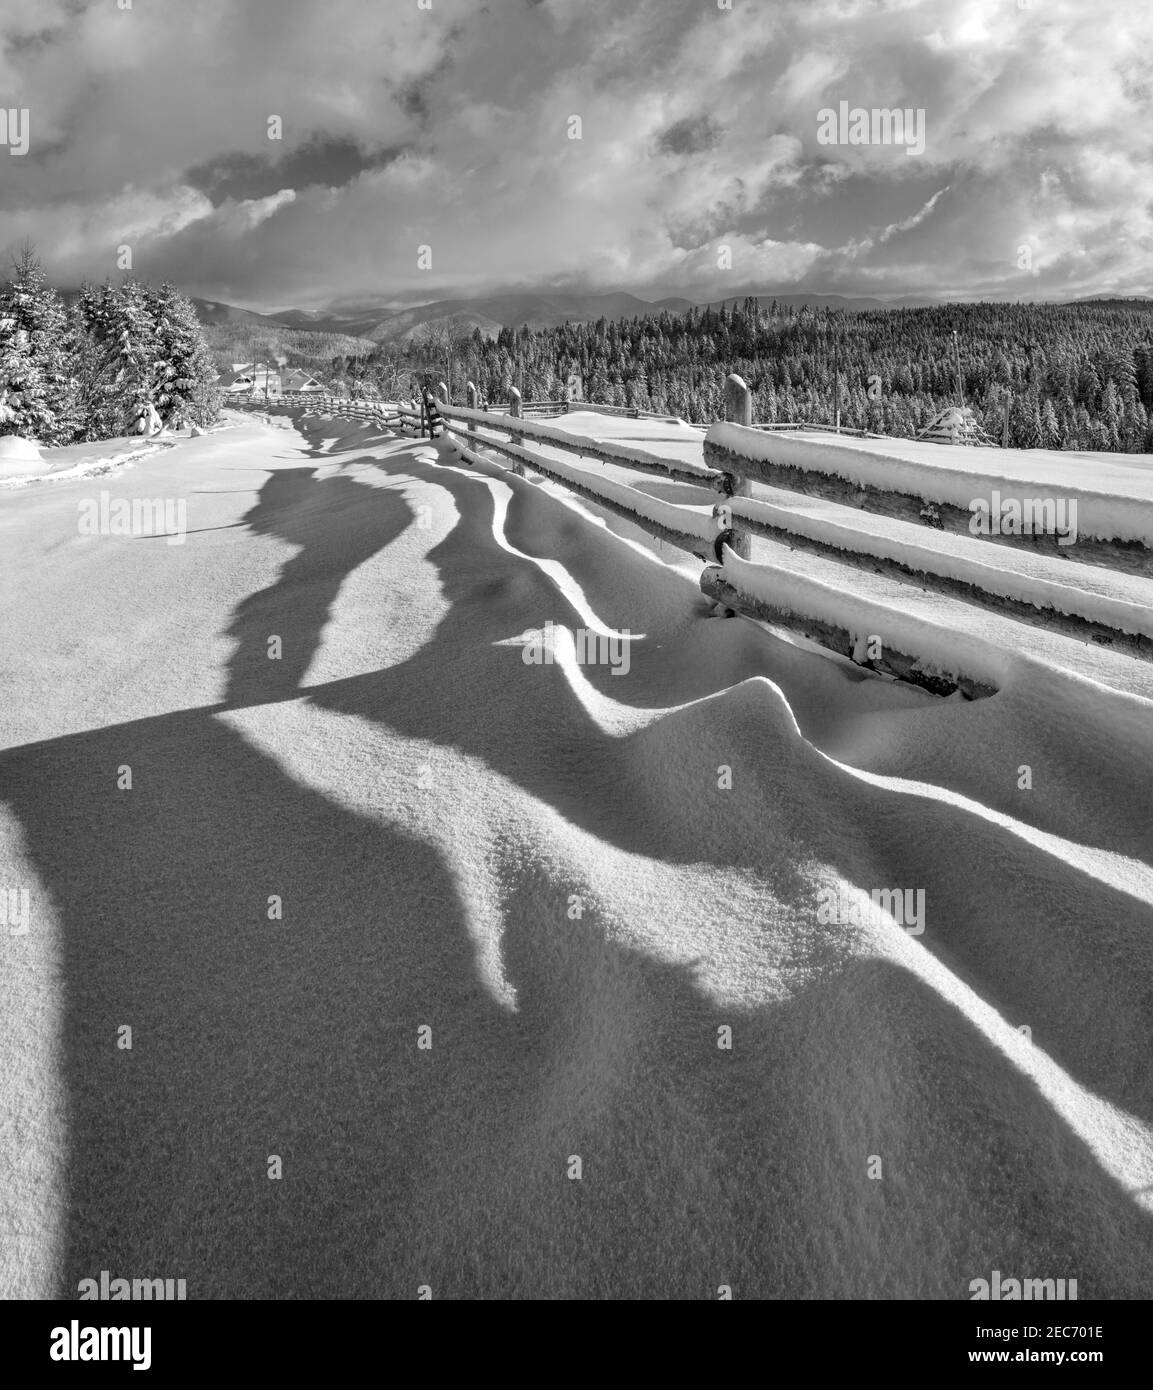 Niveaux de gris. Des ombres ondulées pittoresques sur la neige de la clôture en bois. Montagne alpine hiver hameau en périphérie, sentier enneigé, forêt de sapins. Image haute résolution W Banque D'Images